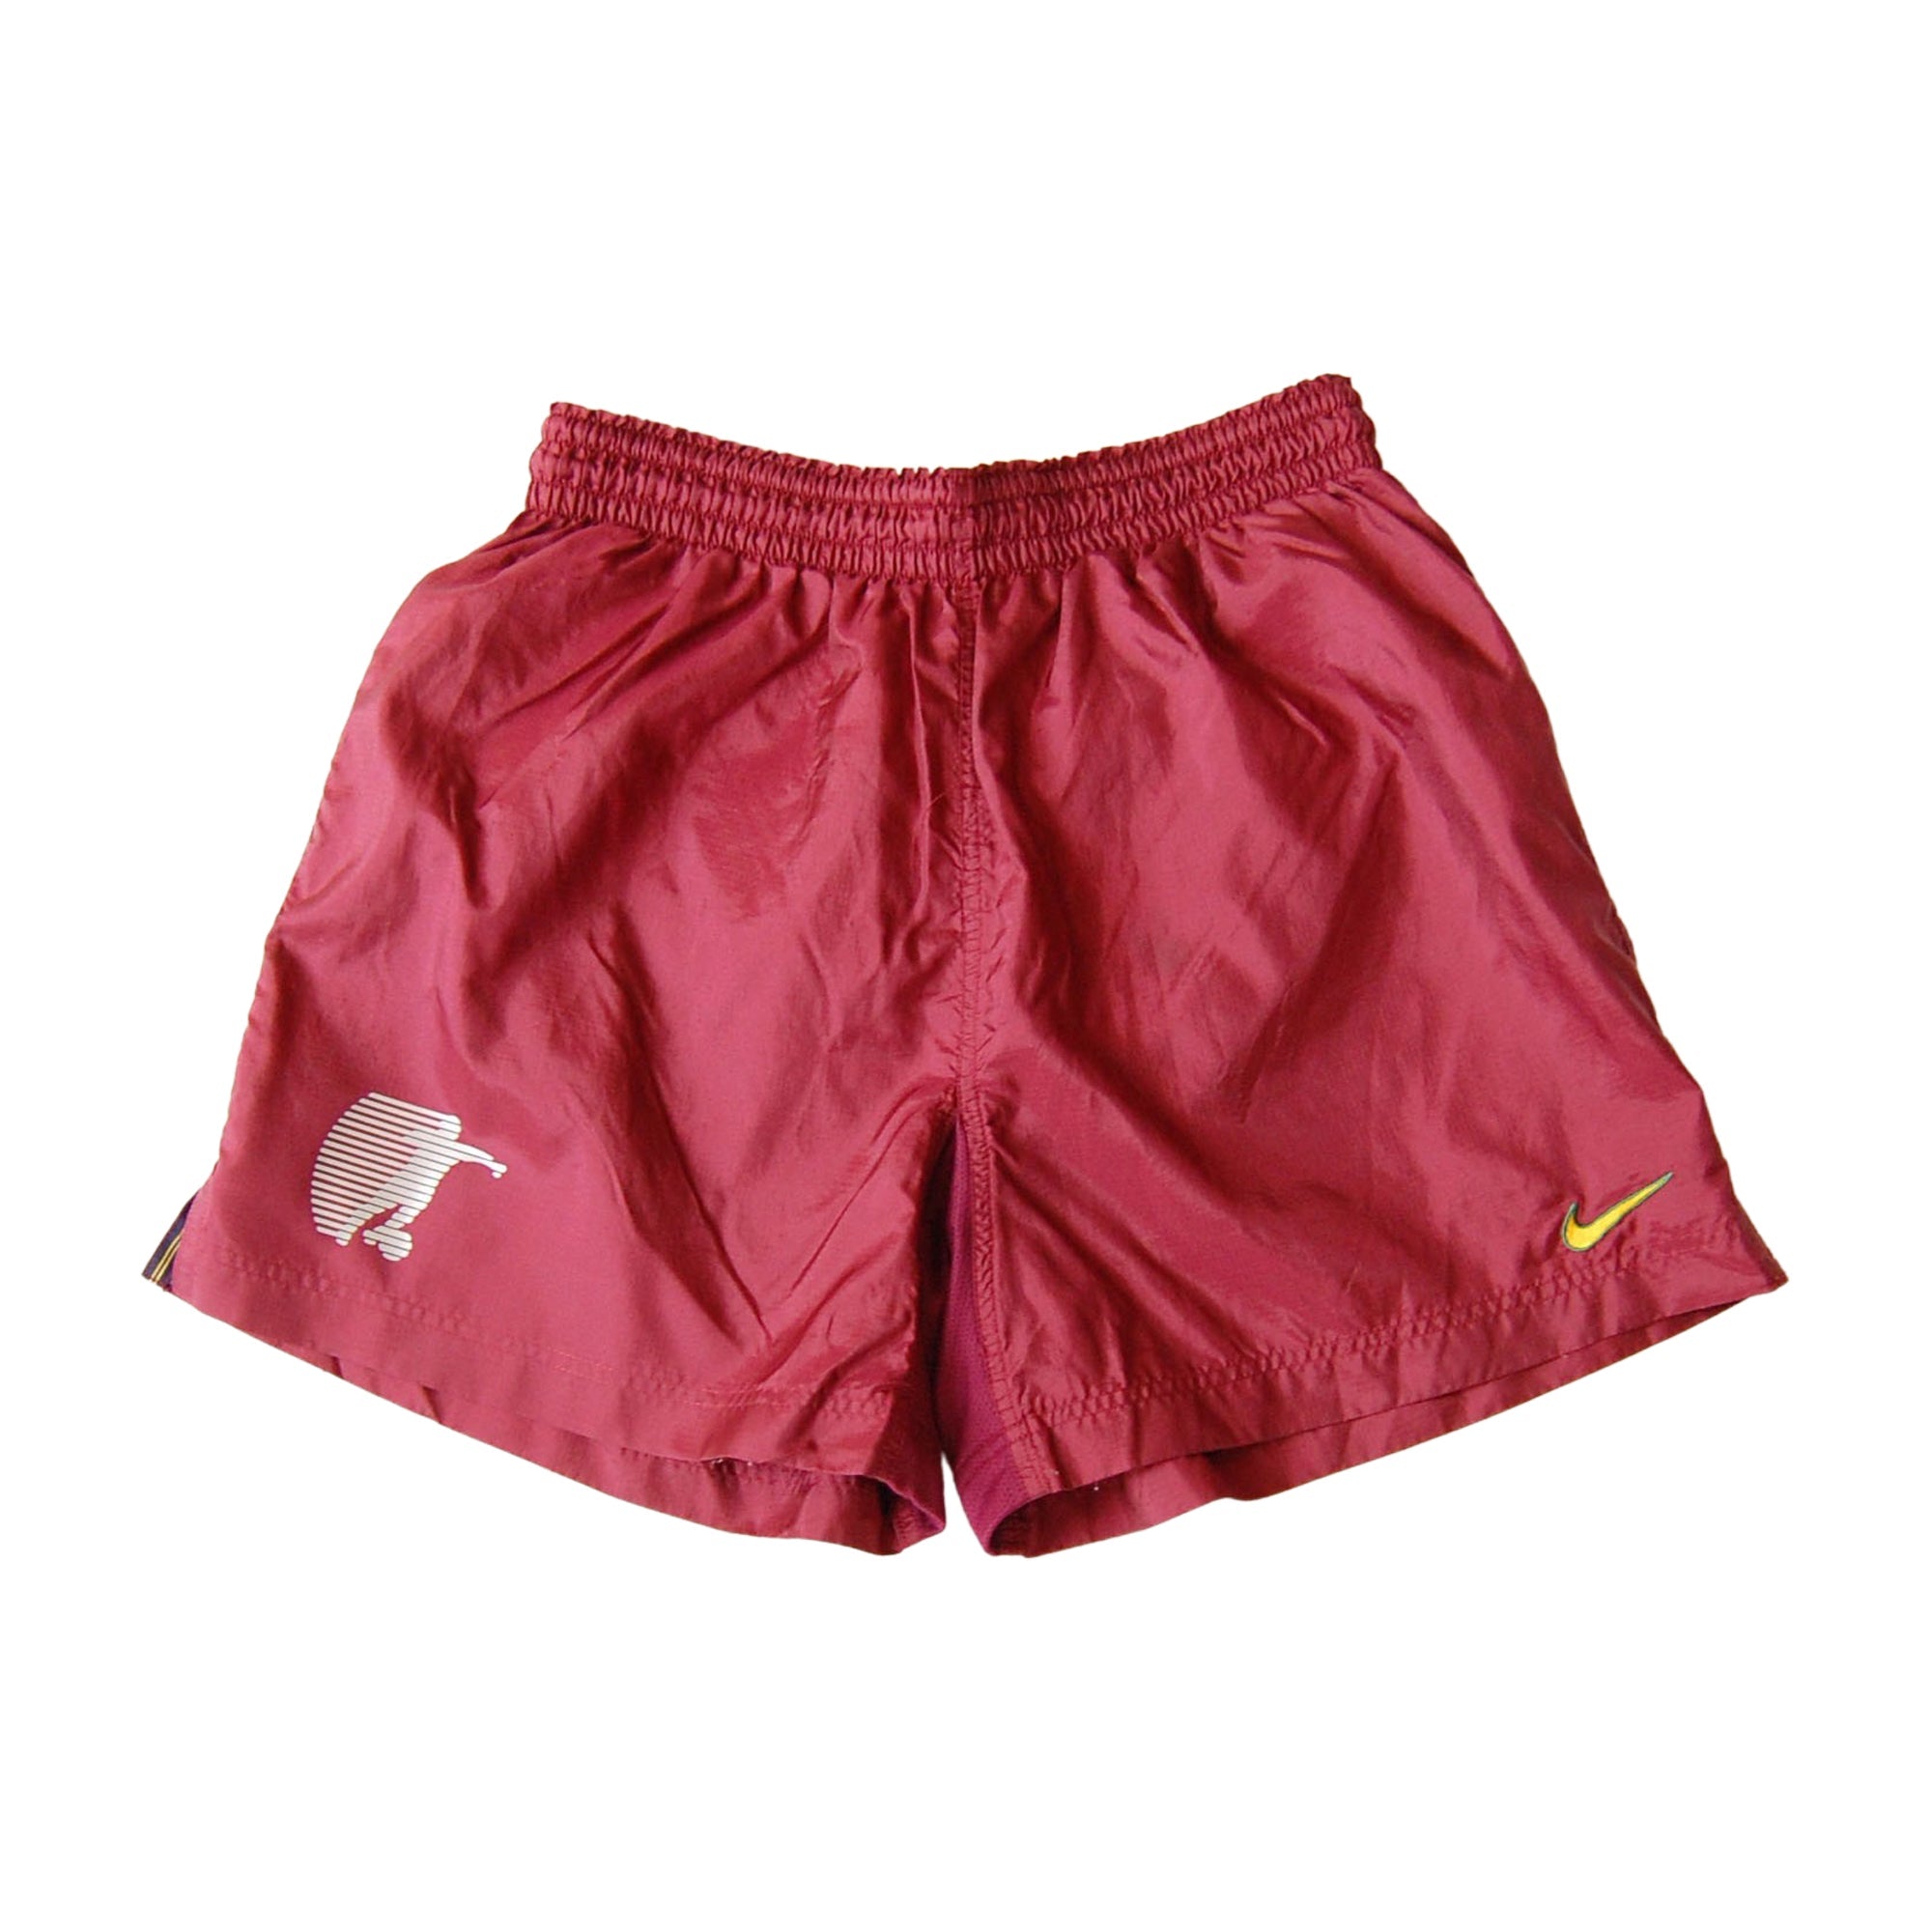 Nike Ripstop Nylon Shorts - L